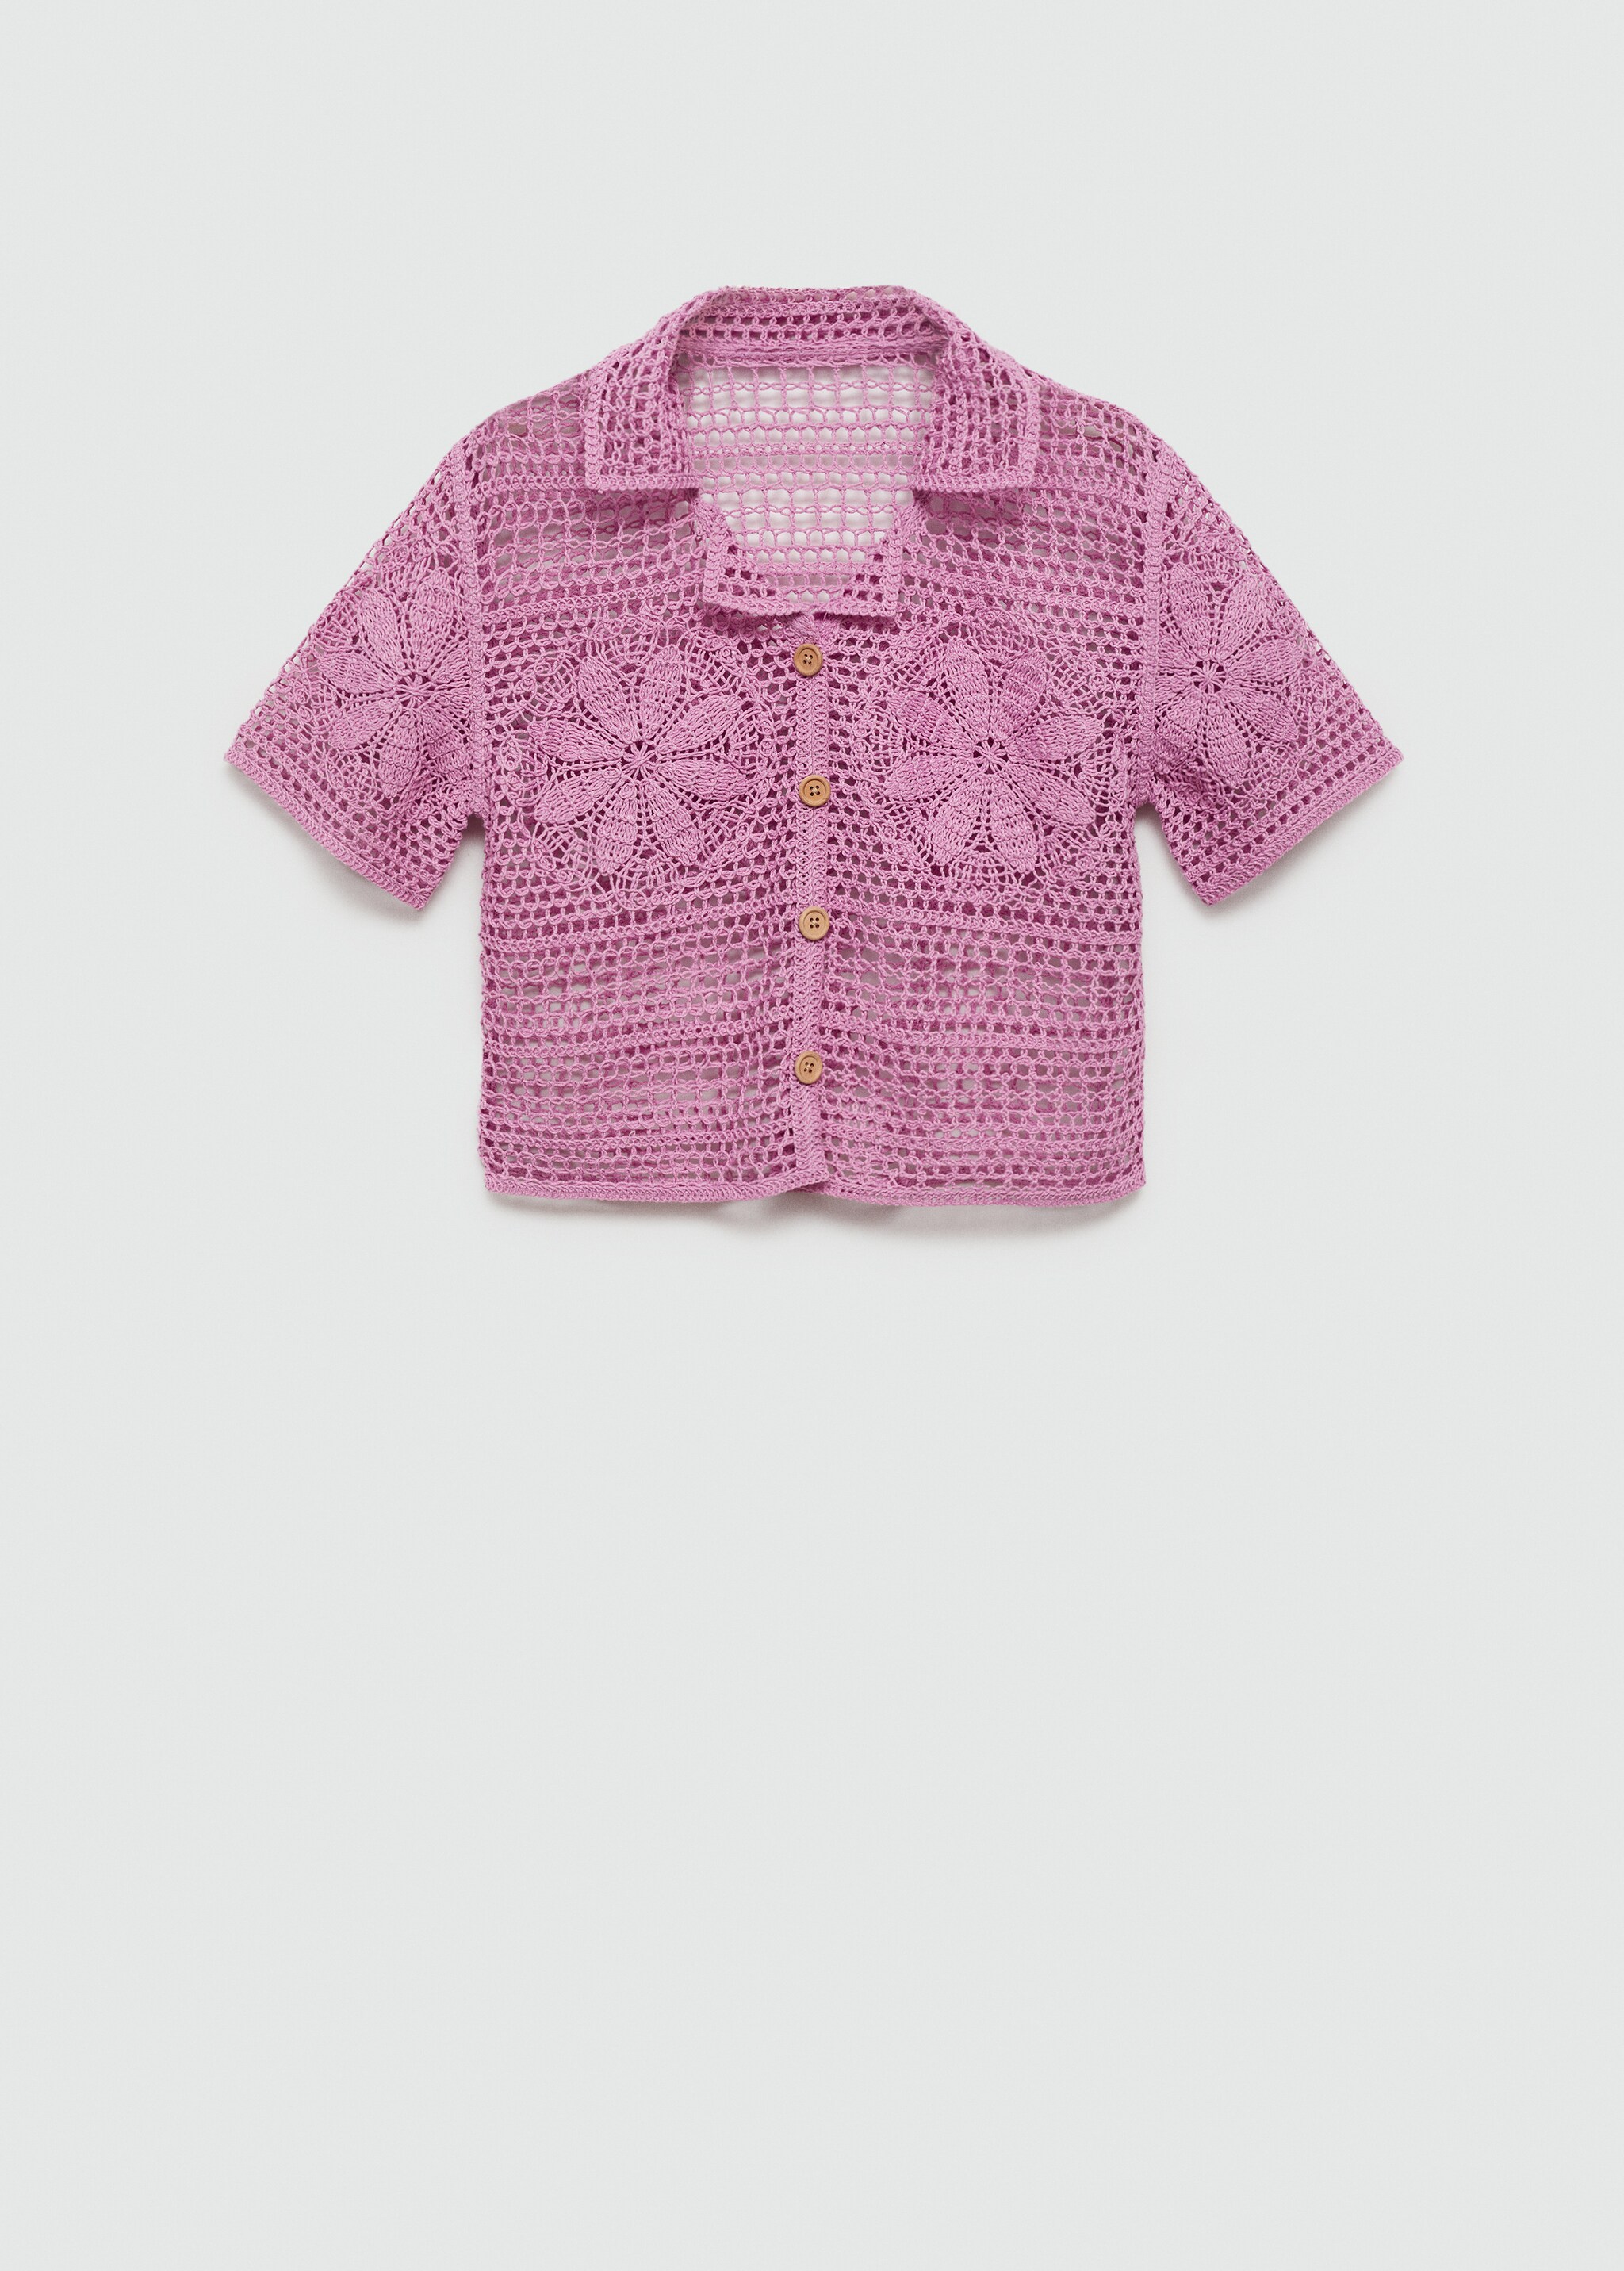 Camisa crochet flores - Artículo sin modelo